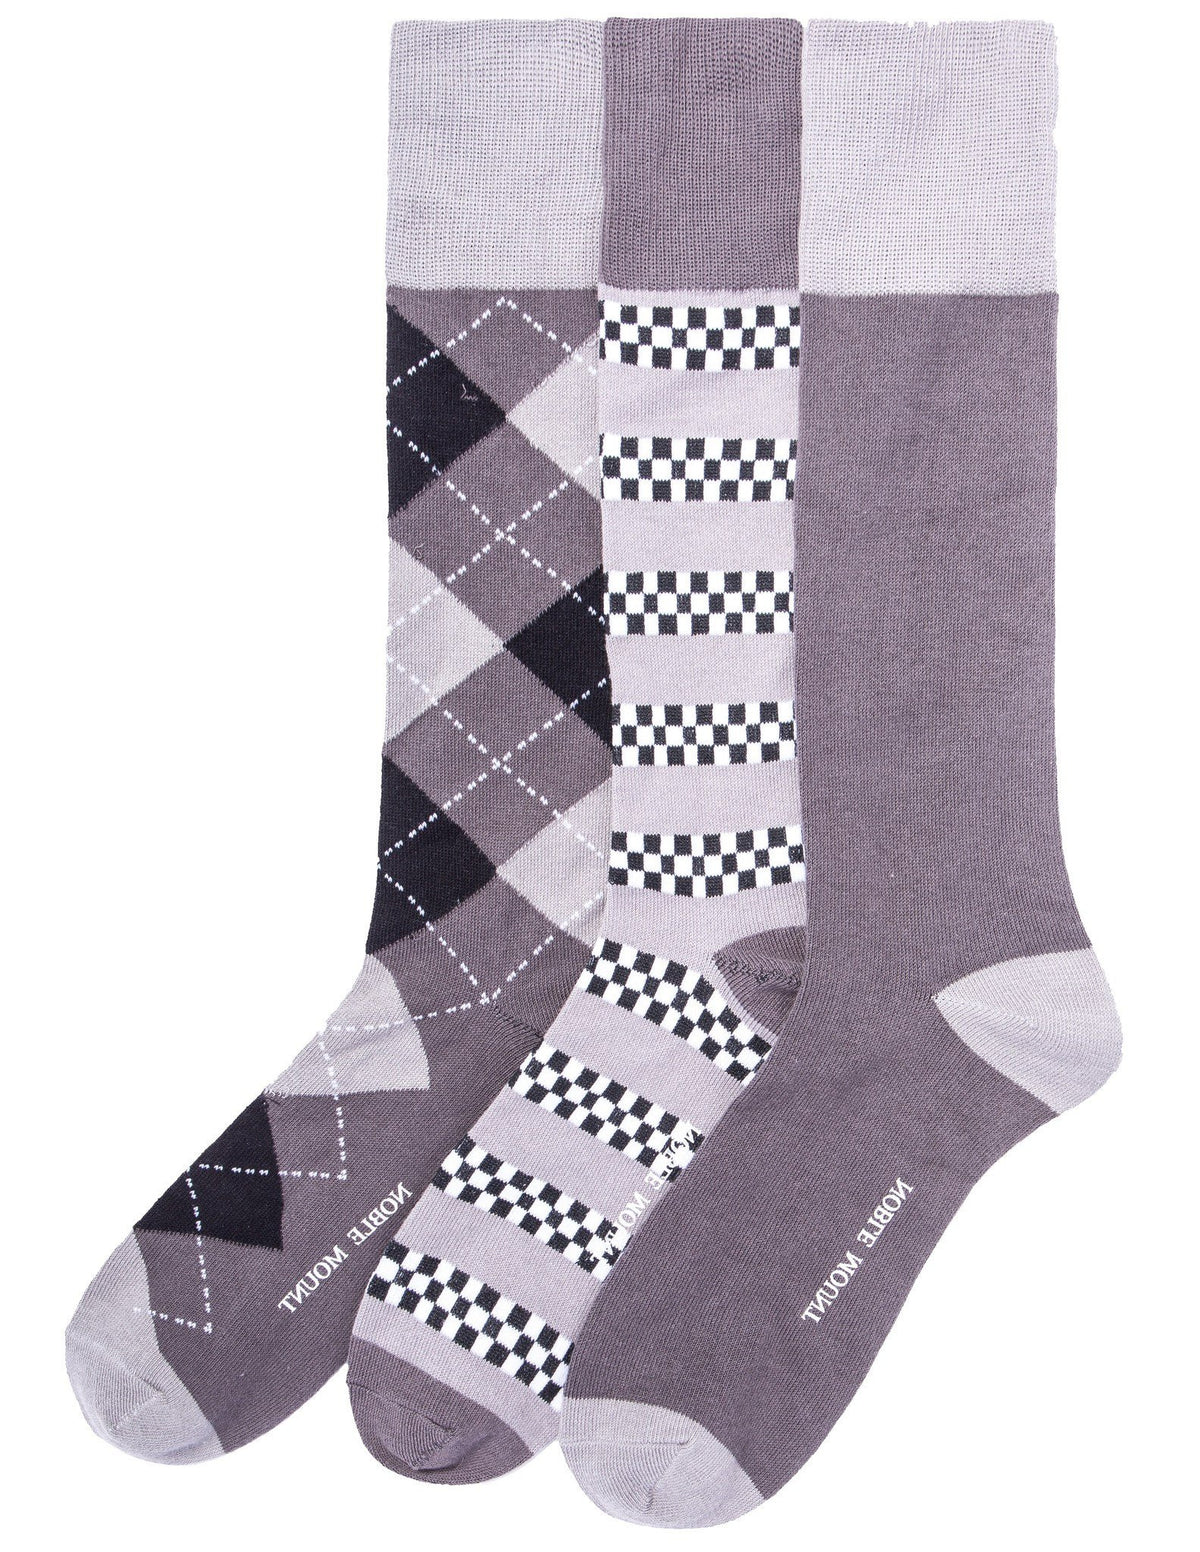 Men's Combed Cotton Dress Socks 3-Pack - Set C9